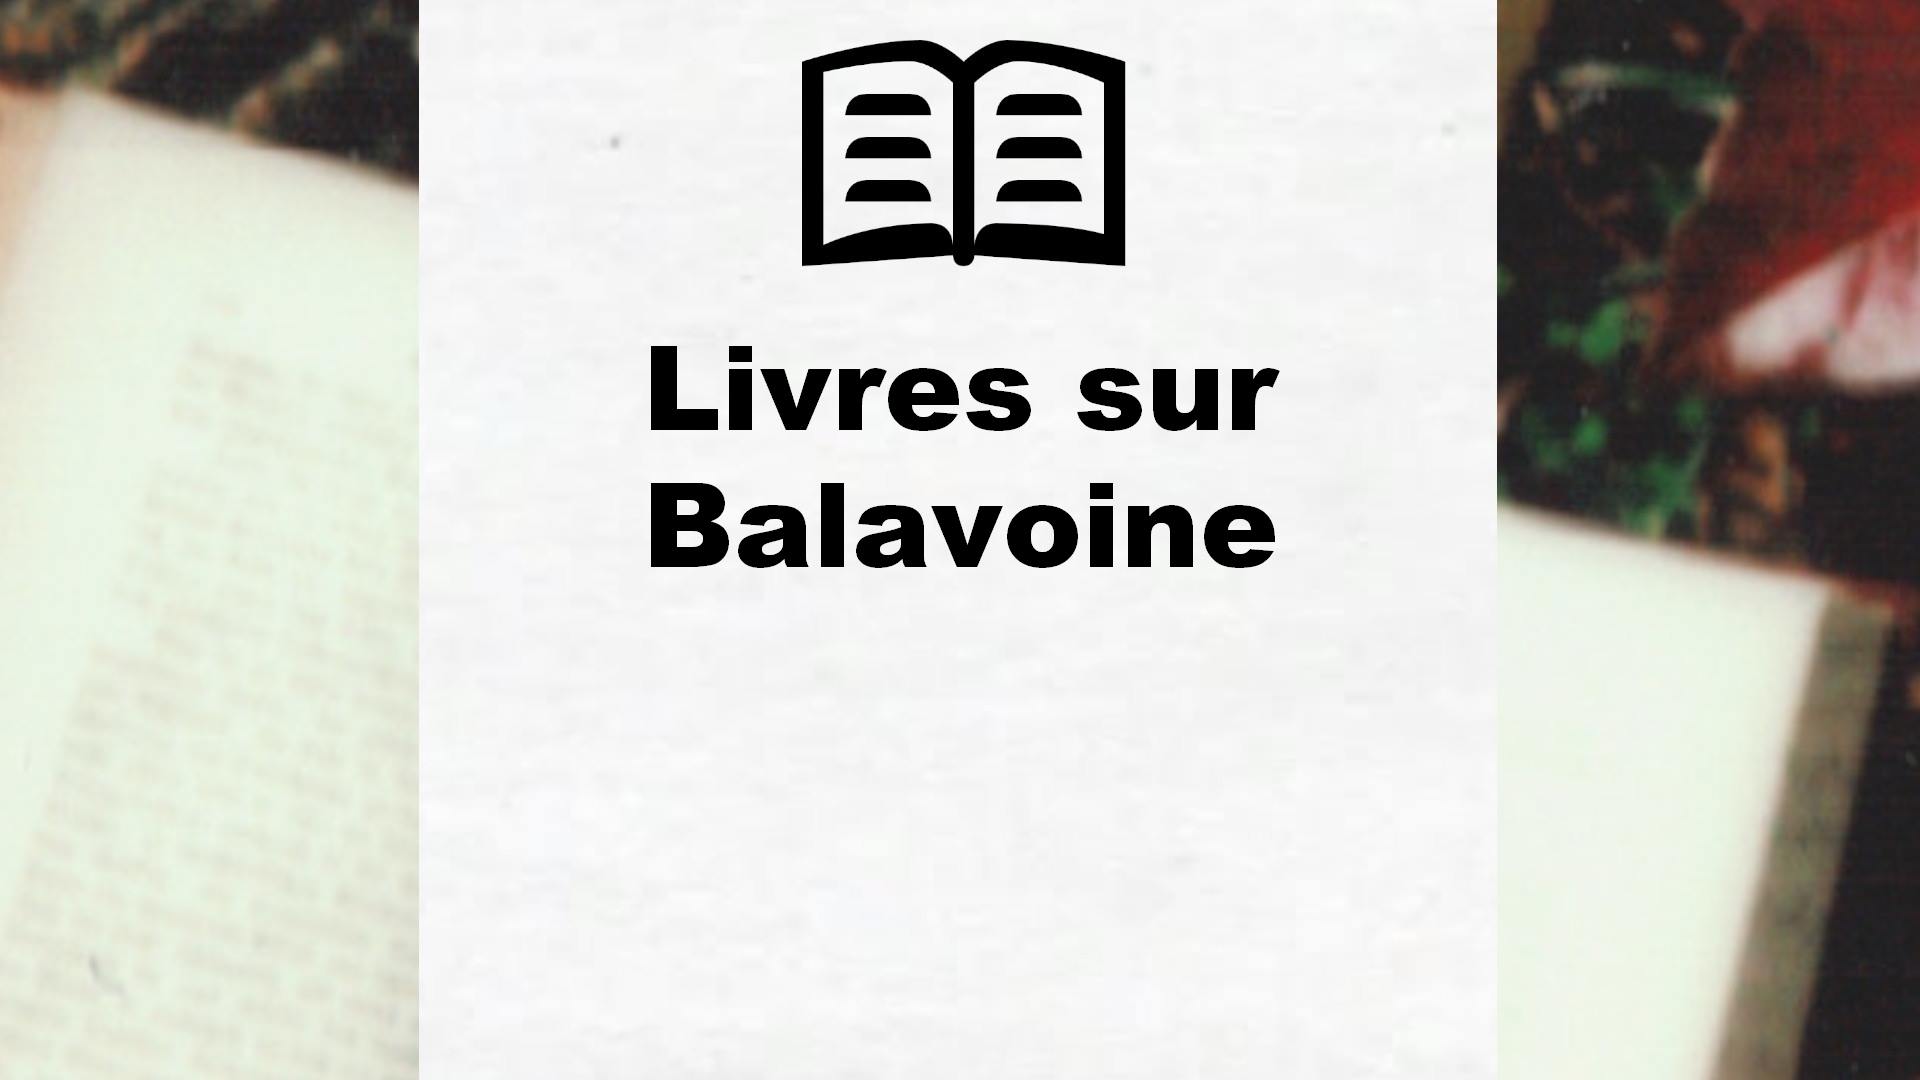 Livres sur Balavoine